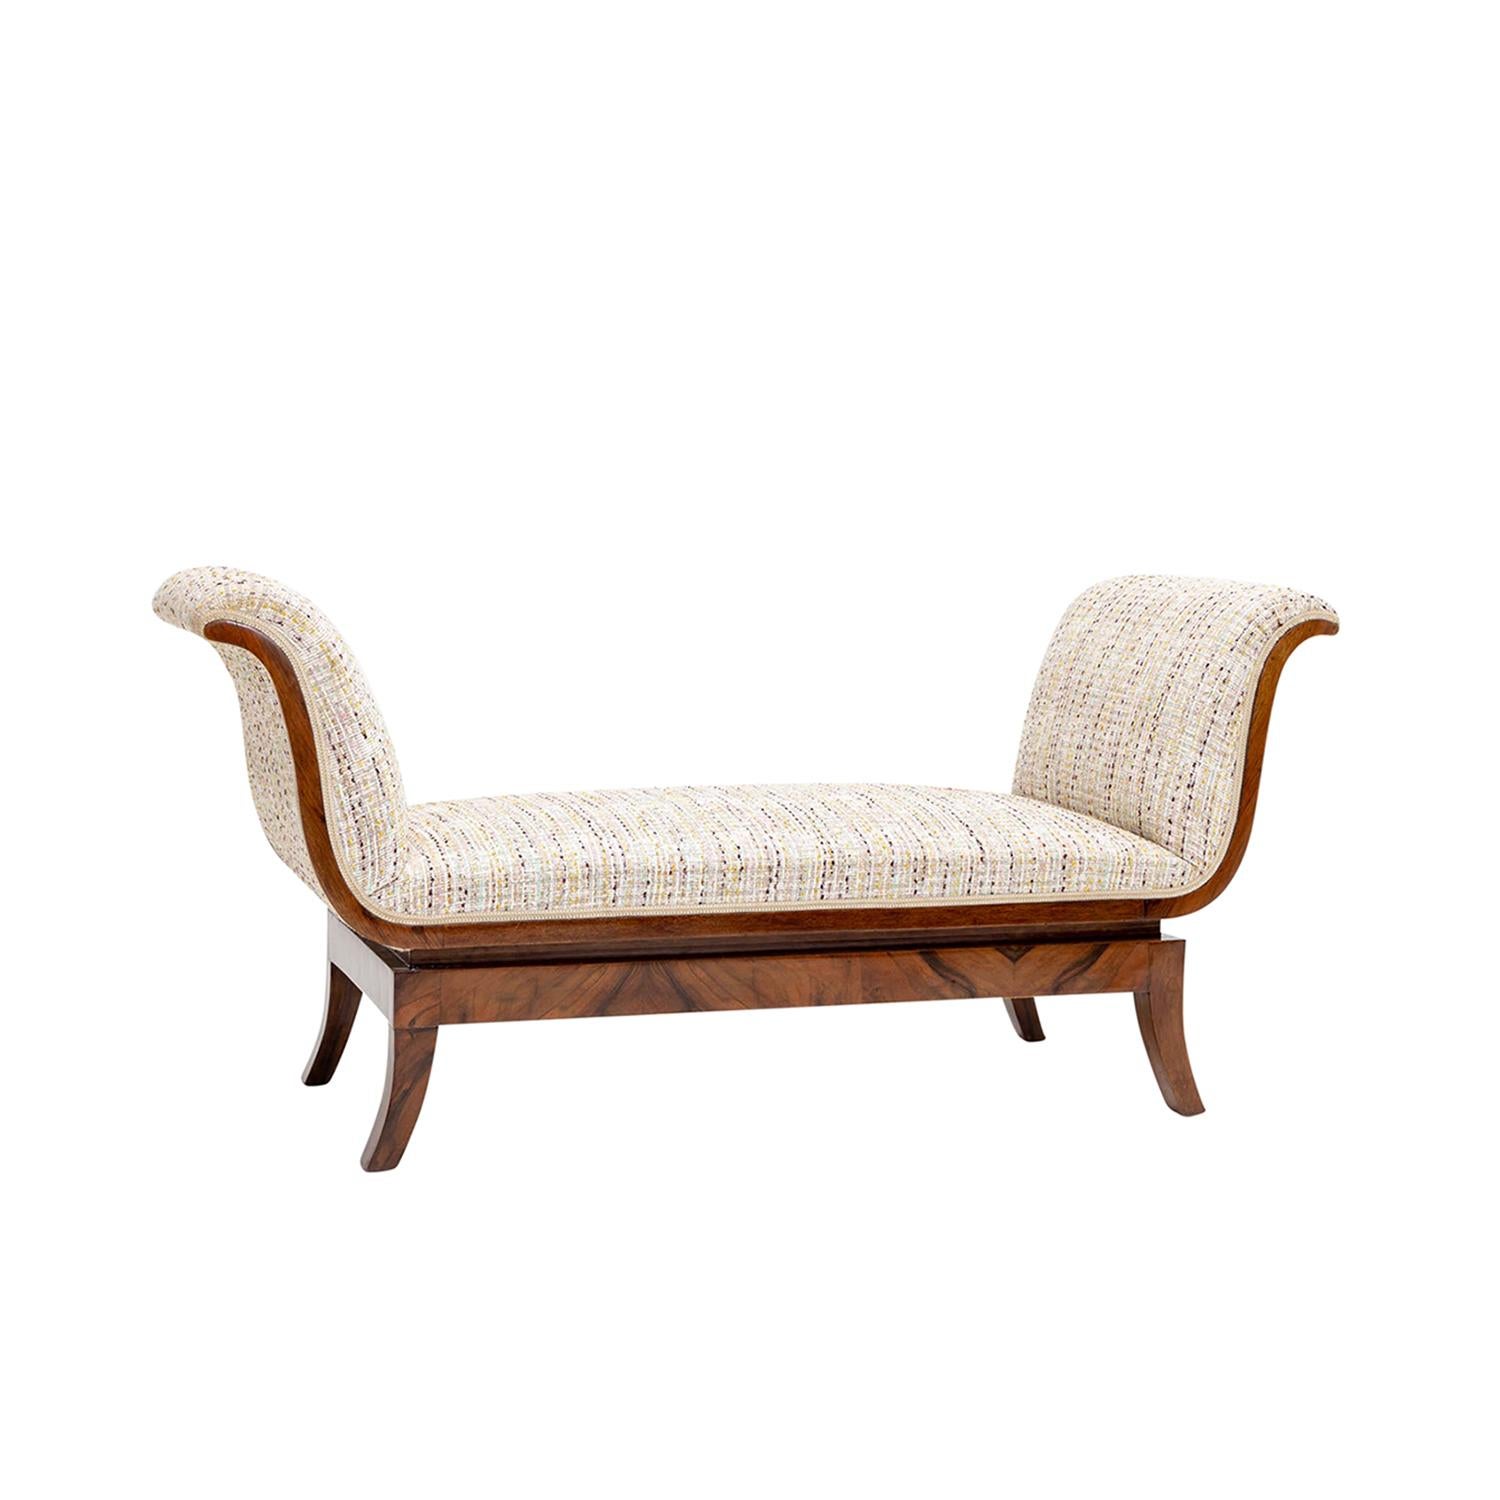 Un petit canapé italien Art Deco vintage en noyer partiellement plaqué et poli à la gomme laque, en bon état. Le canapé est caractérisé par deux dossiers latéraux, reposant sur quatre pieds en bois arqués. Nouvellement revêtu d'un tissu en coton au